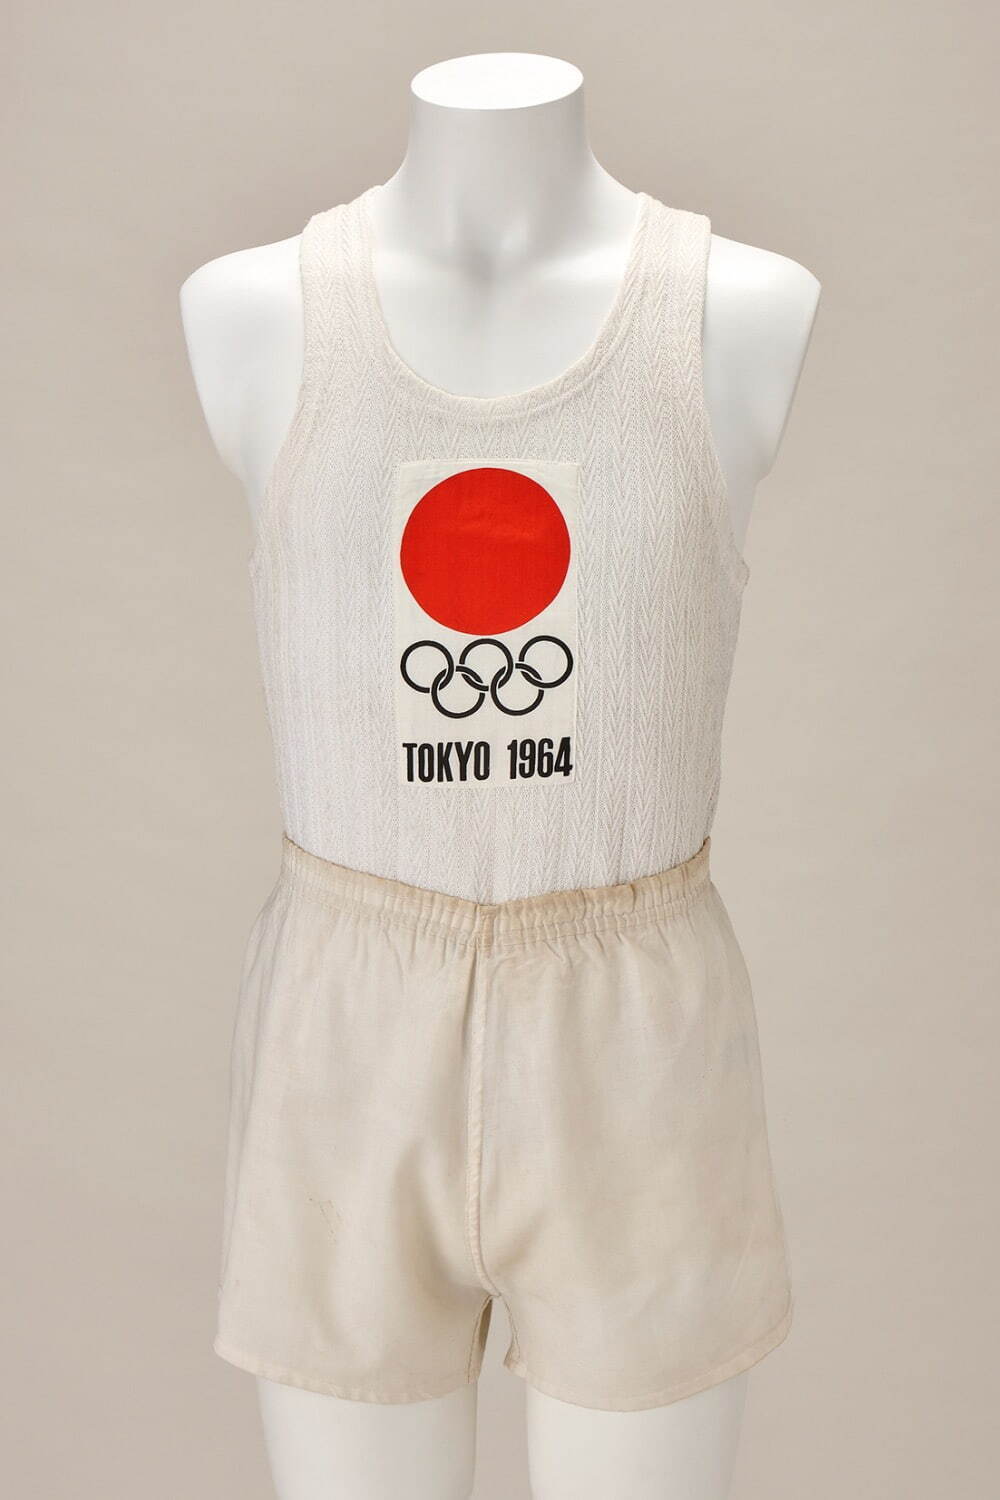 1964年東京大会 聖火ランナー用シャツ、パンツ(男性用)
昭和39年(1964) 秩父宮記念スポーツ博物館蔵